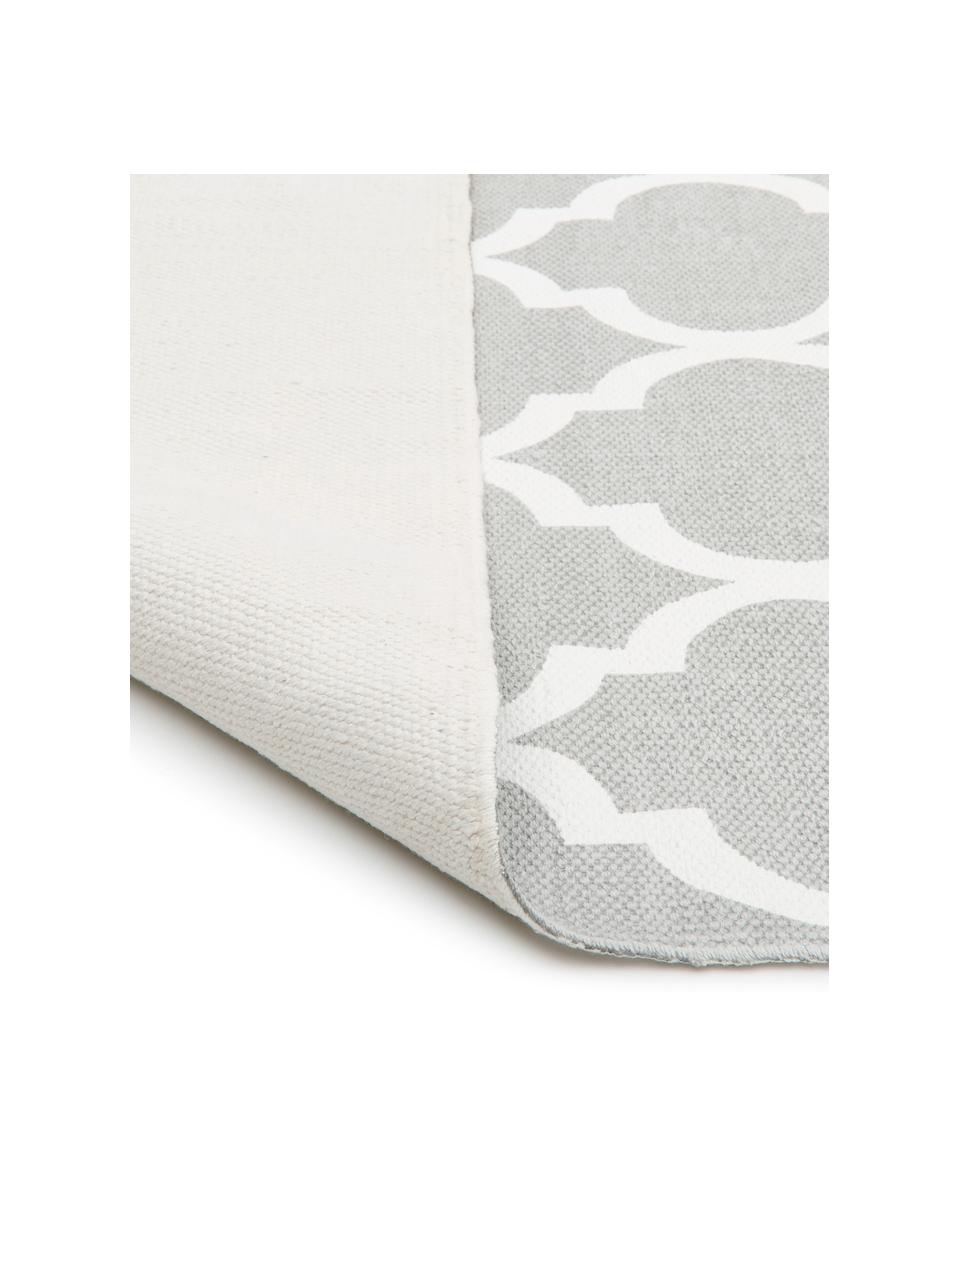 Dun katoenen vloerkleed Amira in grijs/wit, handgeweven, 100% katoen, Lichtgrijs, B 160 x L 230 cm (maat M)